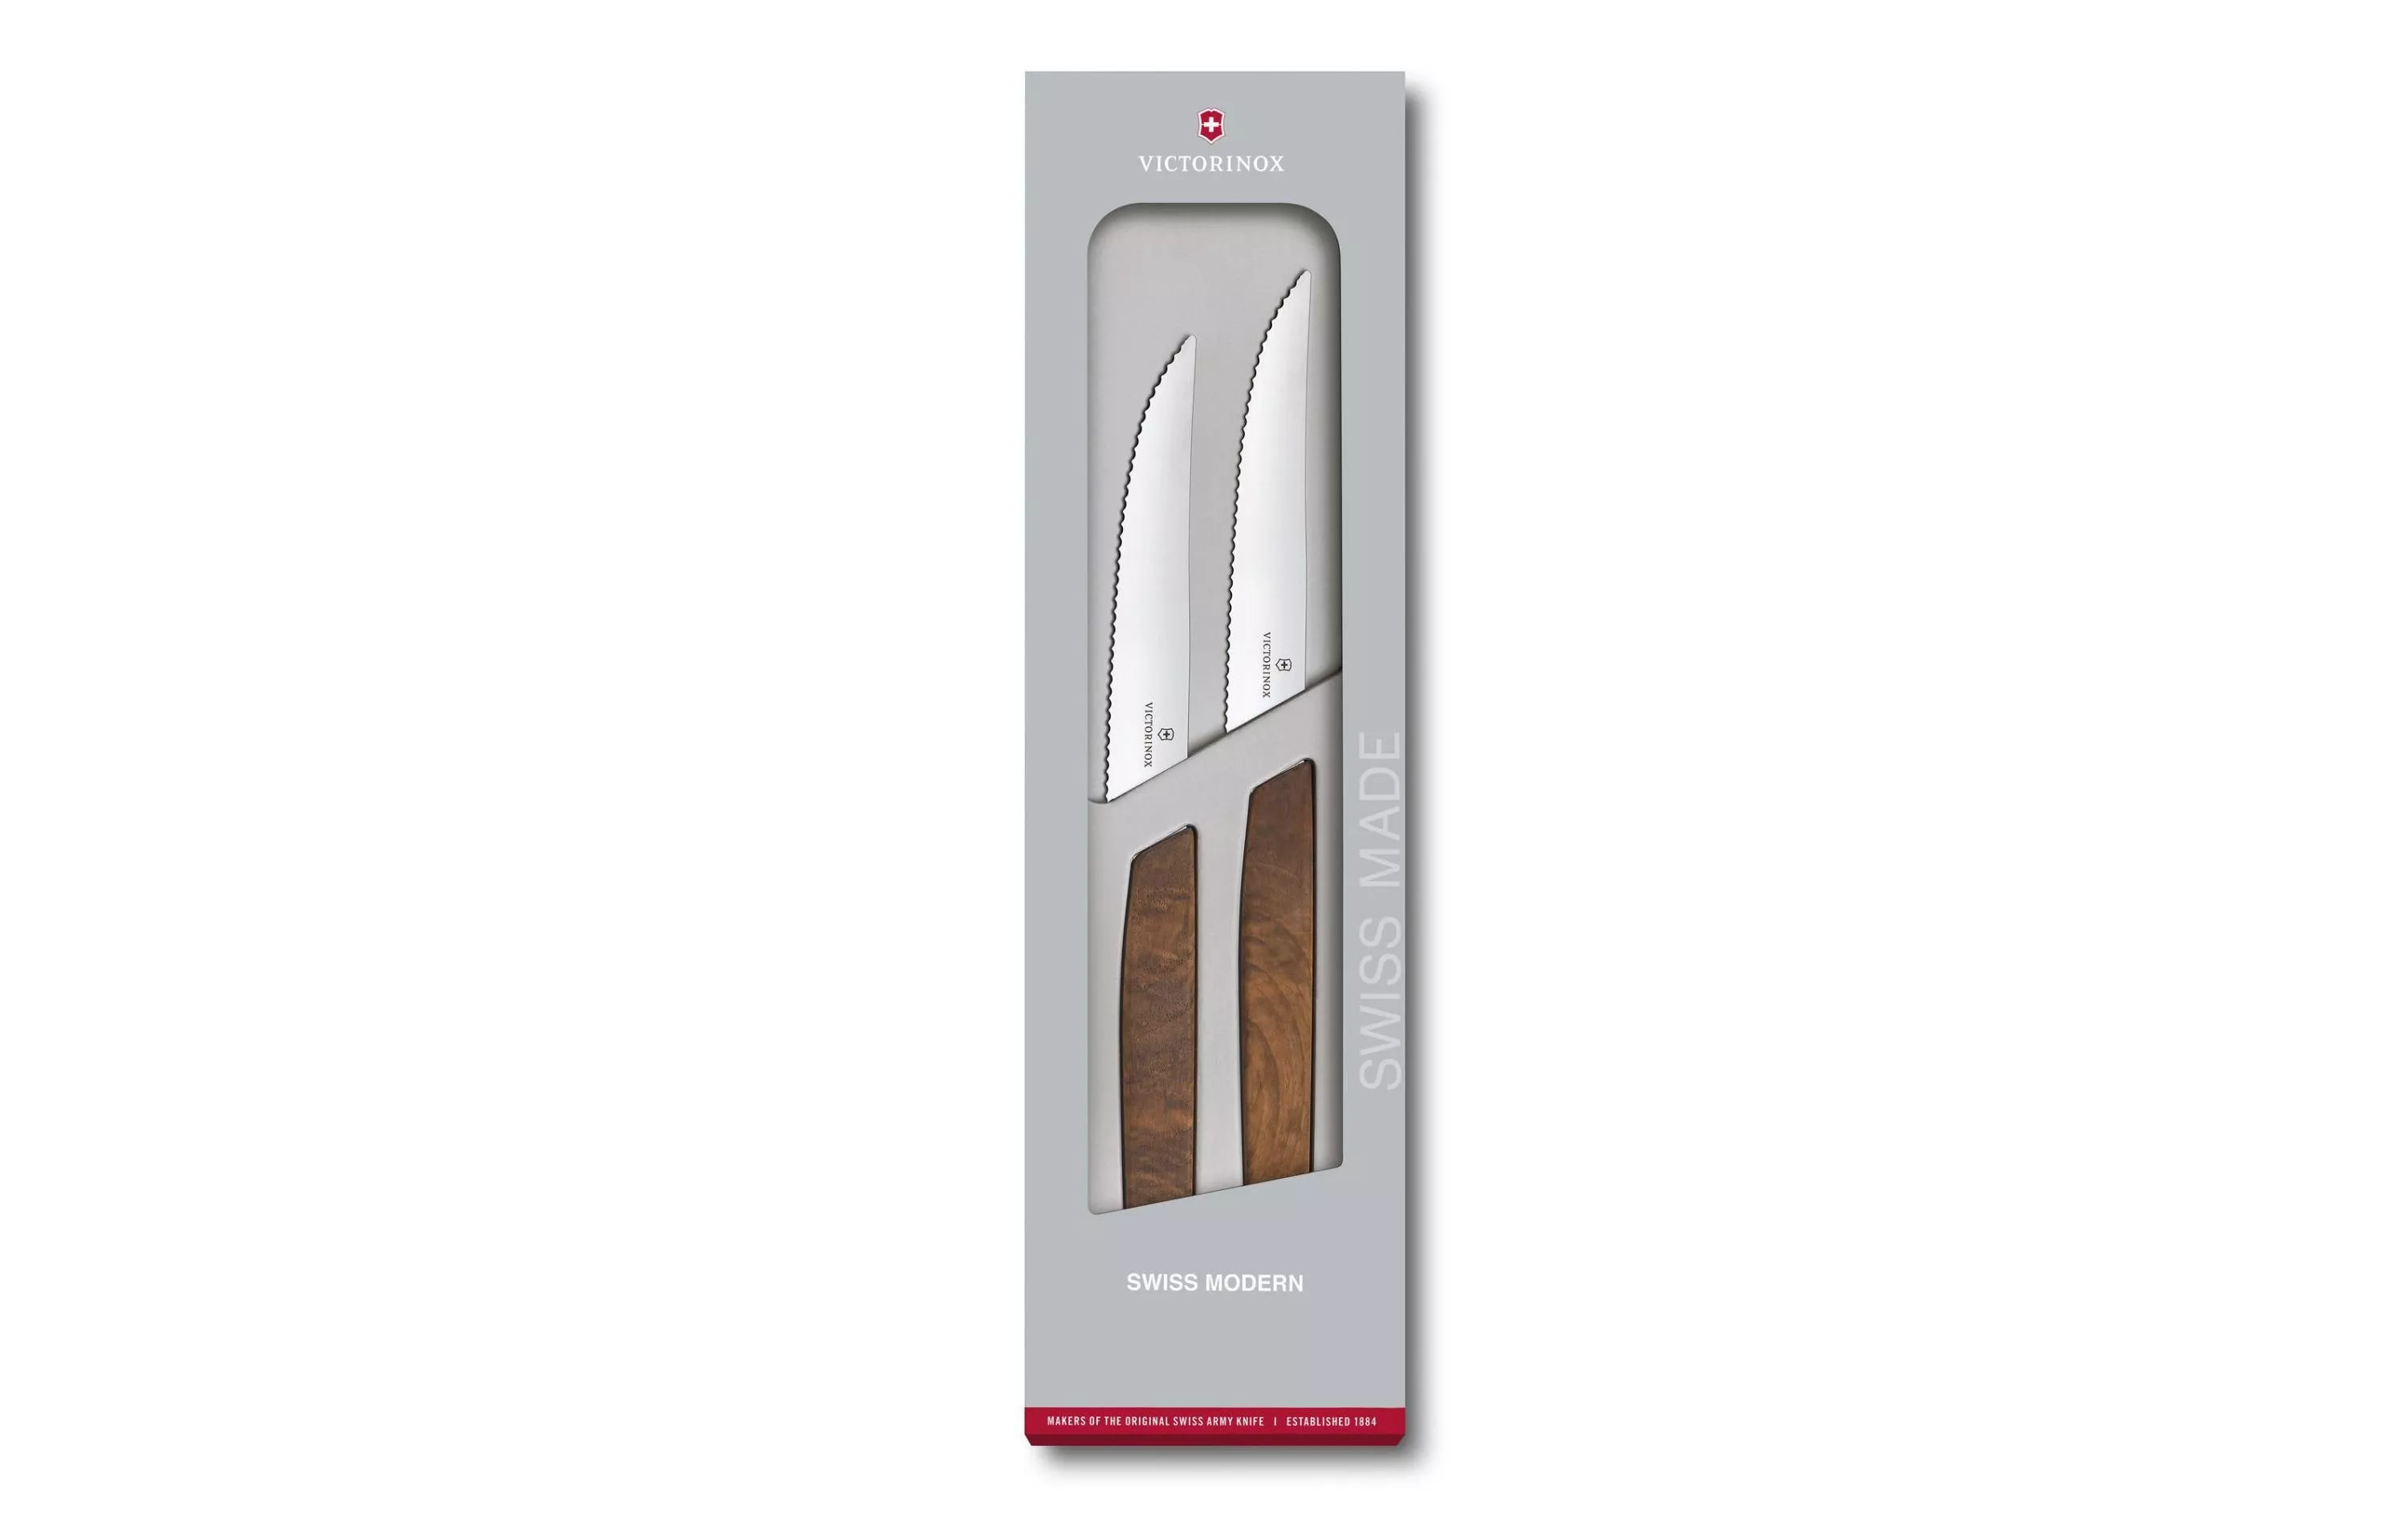 Steak coltello Set svizzero moderno 2 pezzi, legno di noce